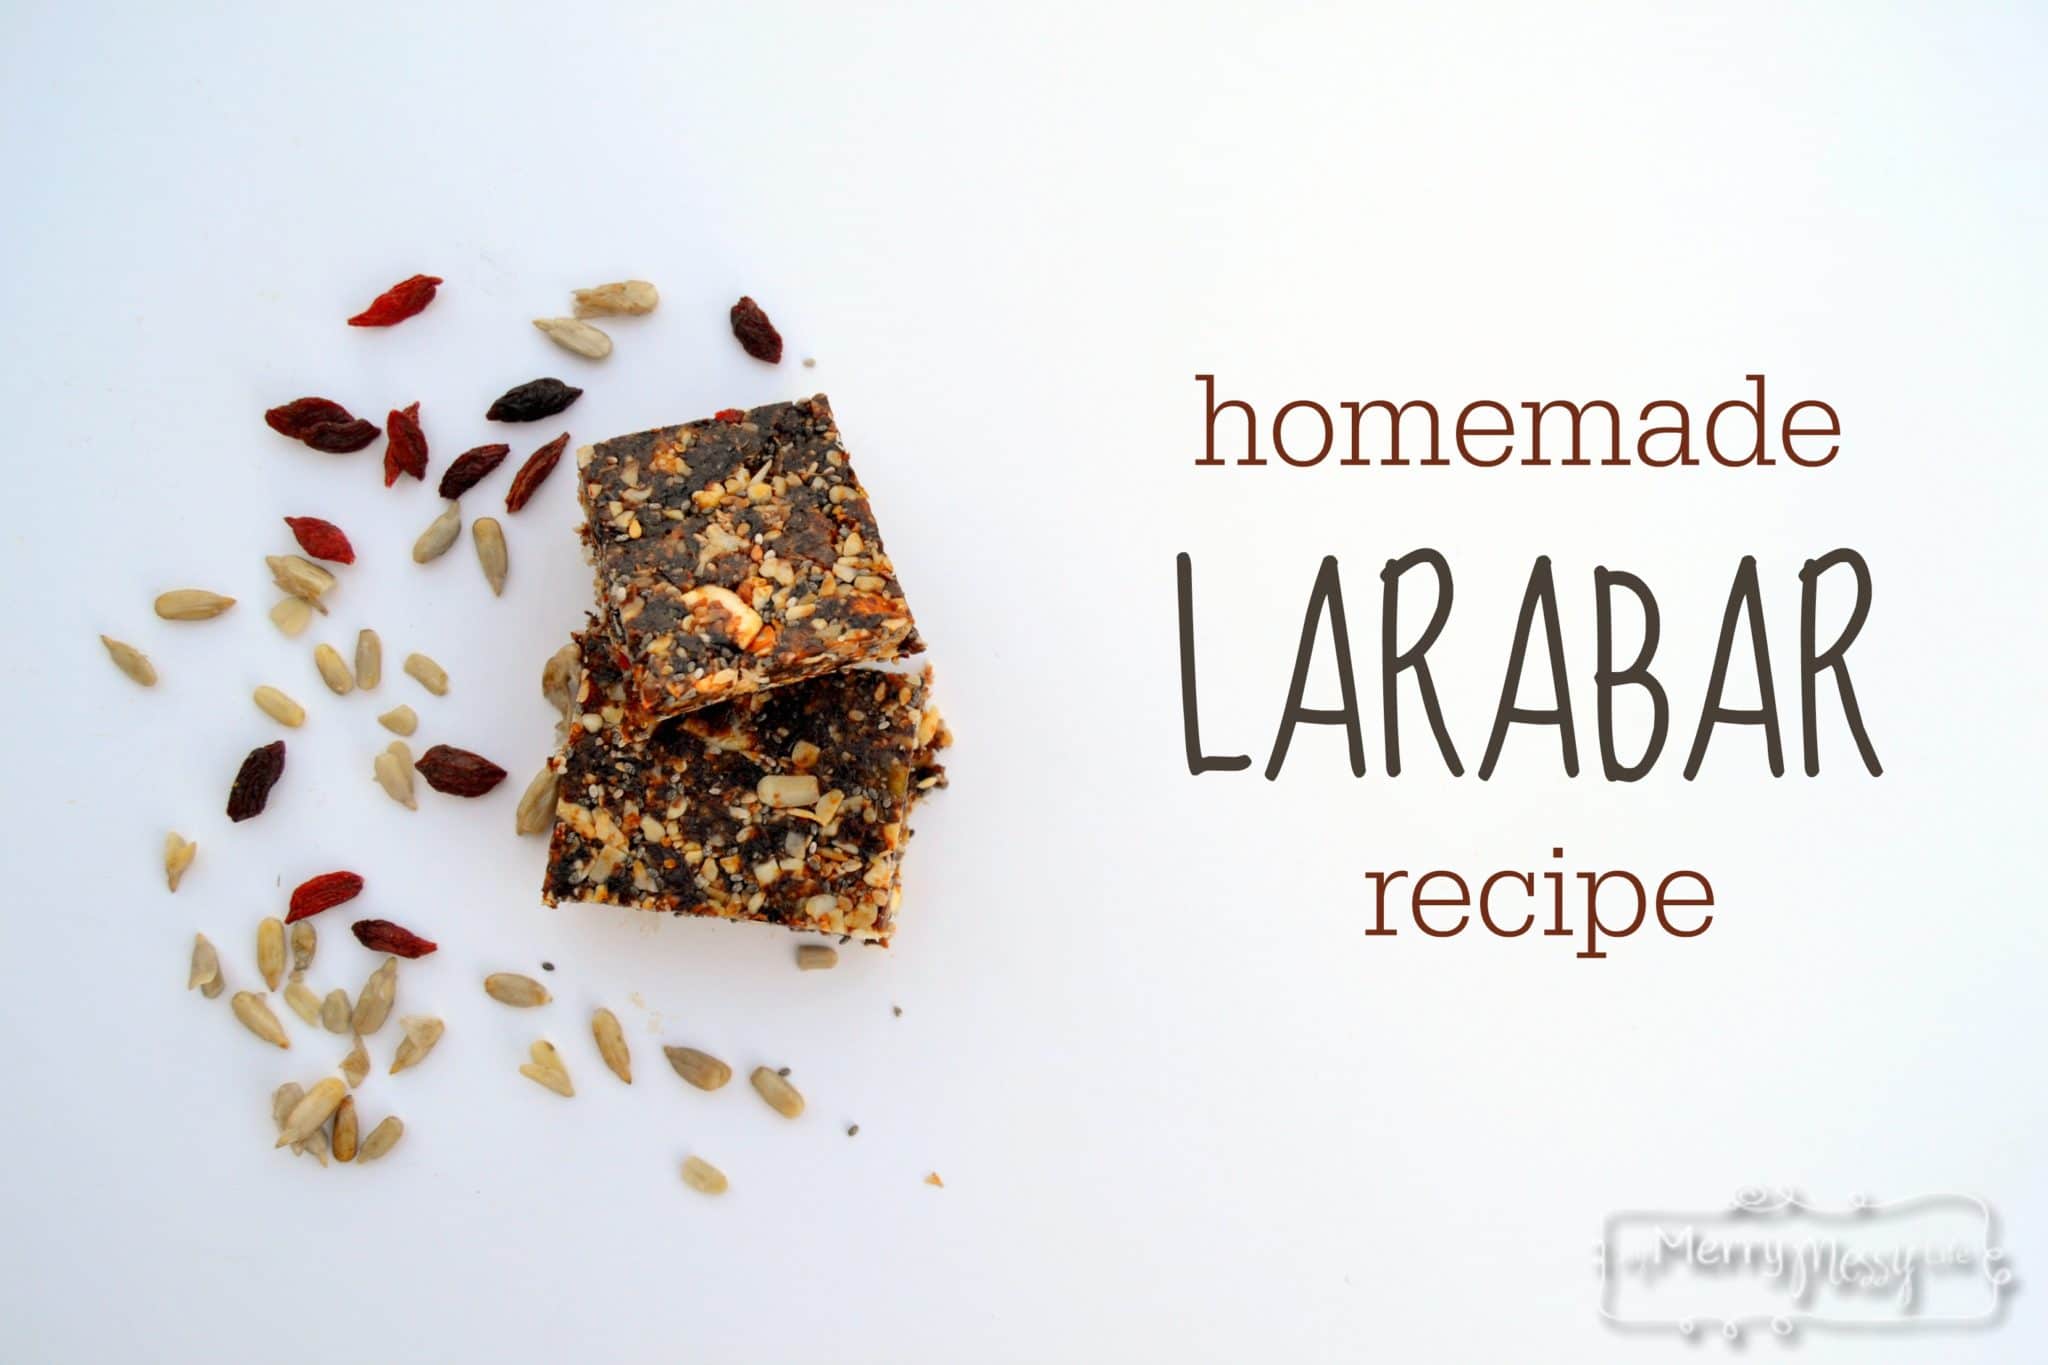 Homemade Larabar Recipe - Easy, Delicious, Real & Nutritious! 